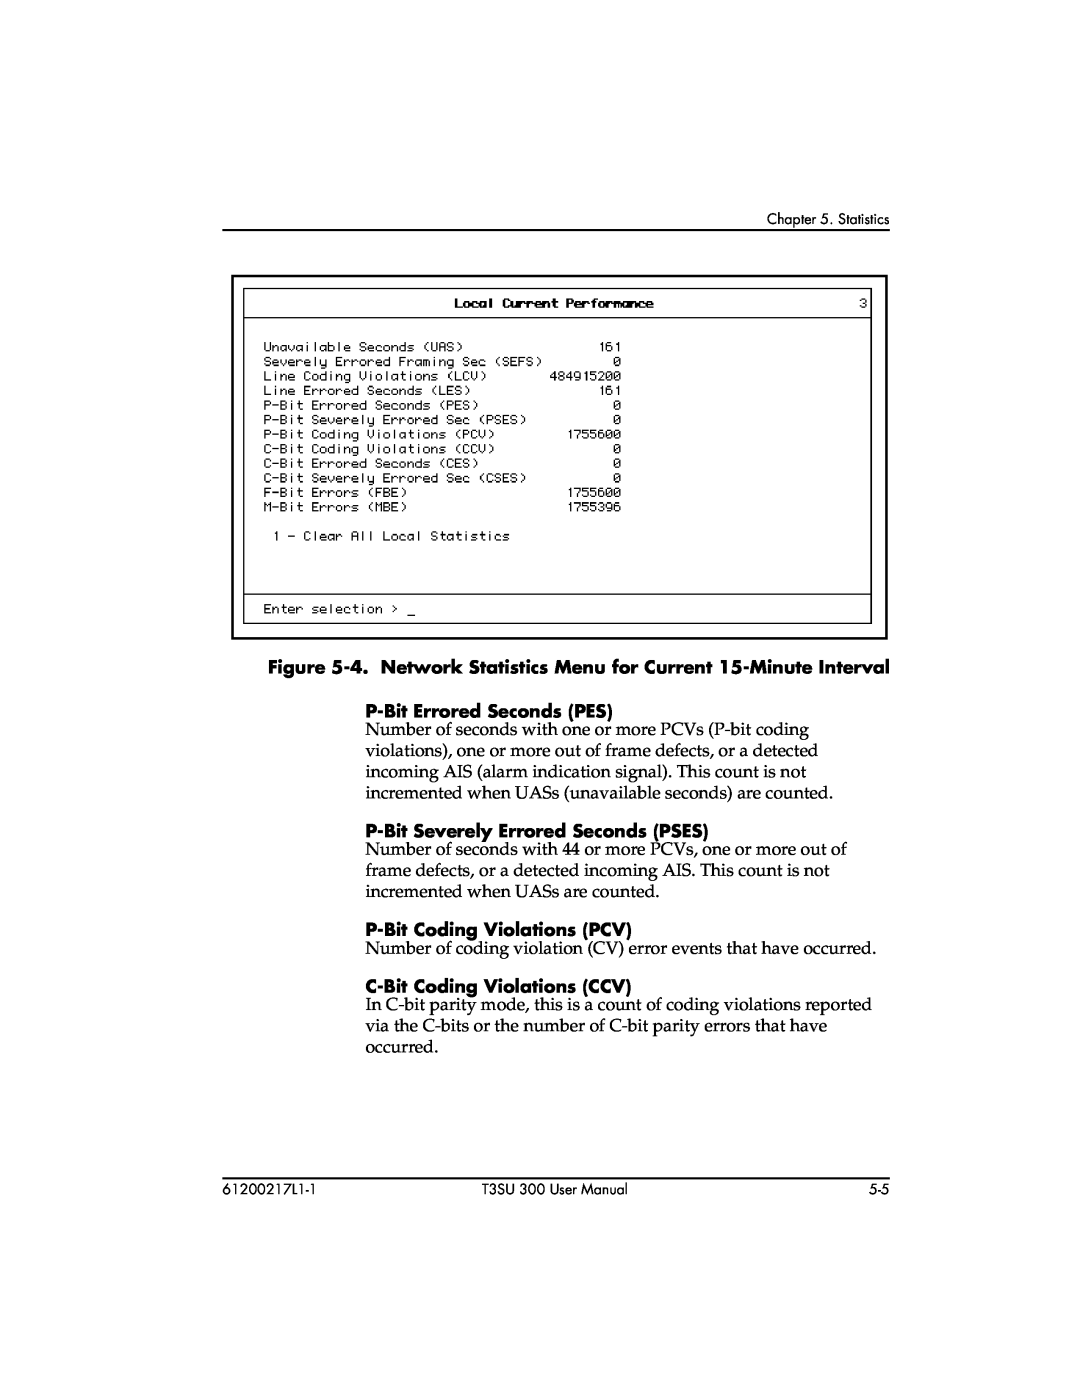 ADTRAN T3SU 300 user manual 4. Network Statistics Menu for Current 15-Minute Interval, P-Bit Errored Seconds PES 